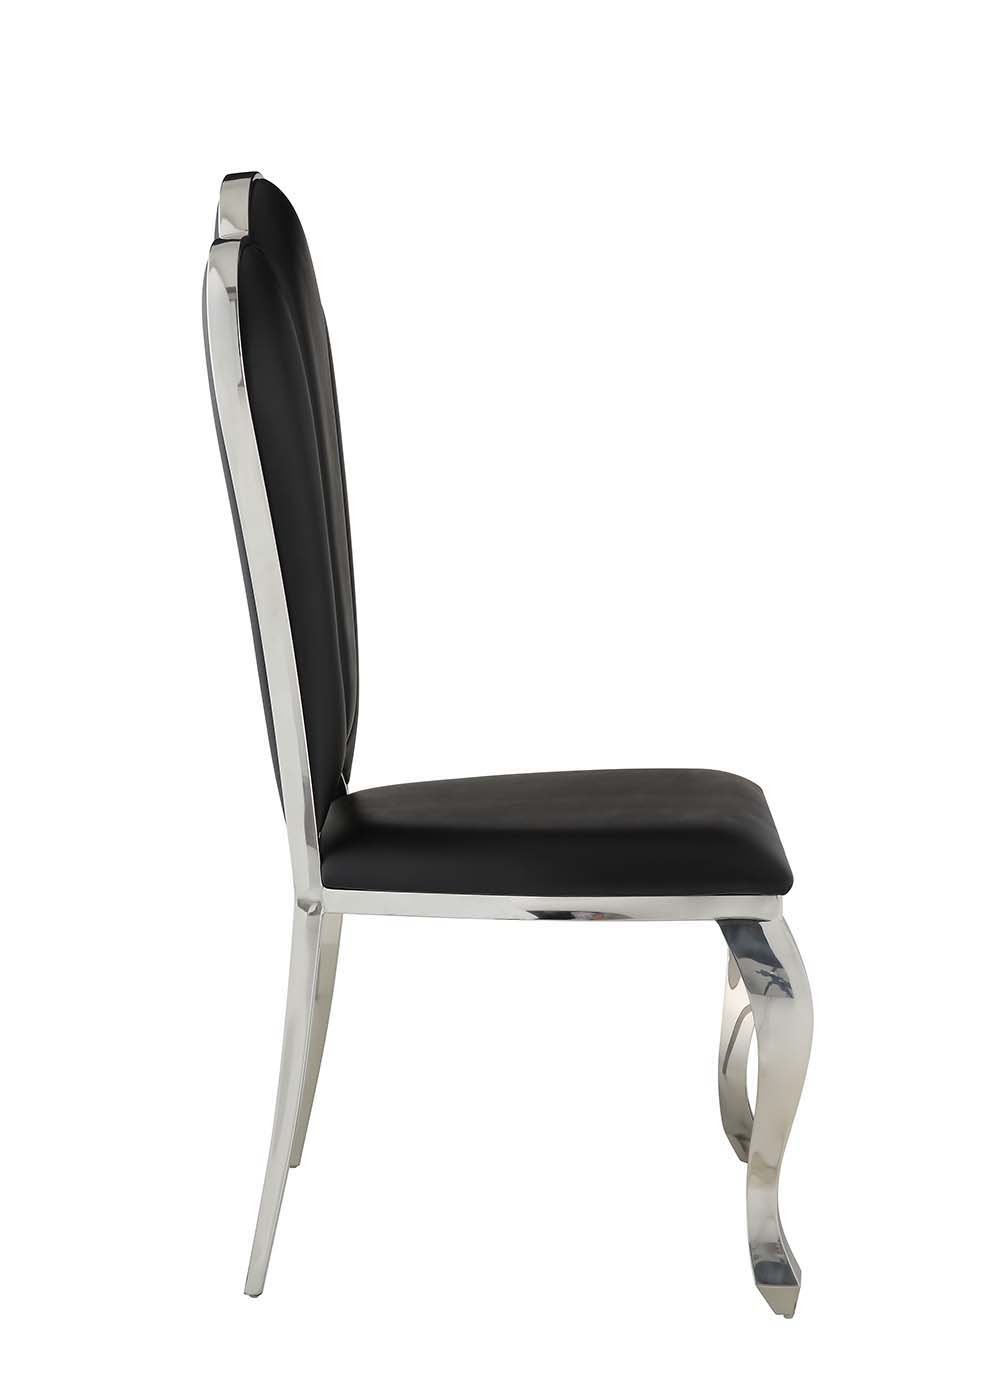 Cyrene - Side Chair - 20" - Tony's Home Furnishings